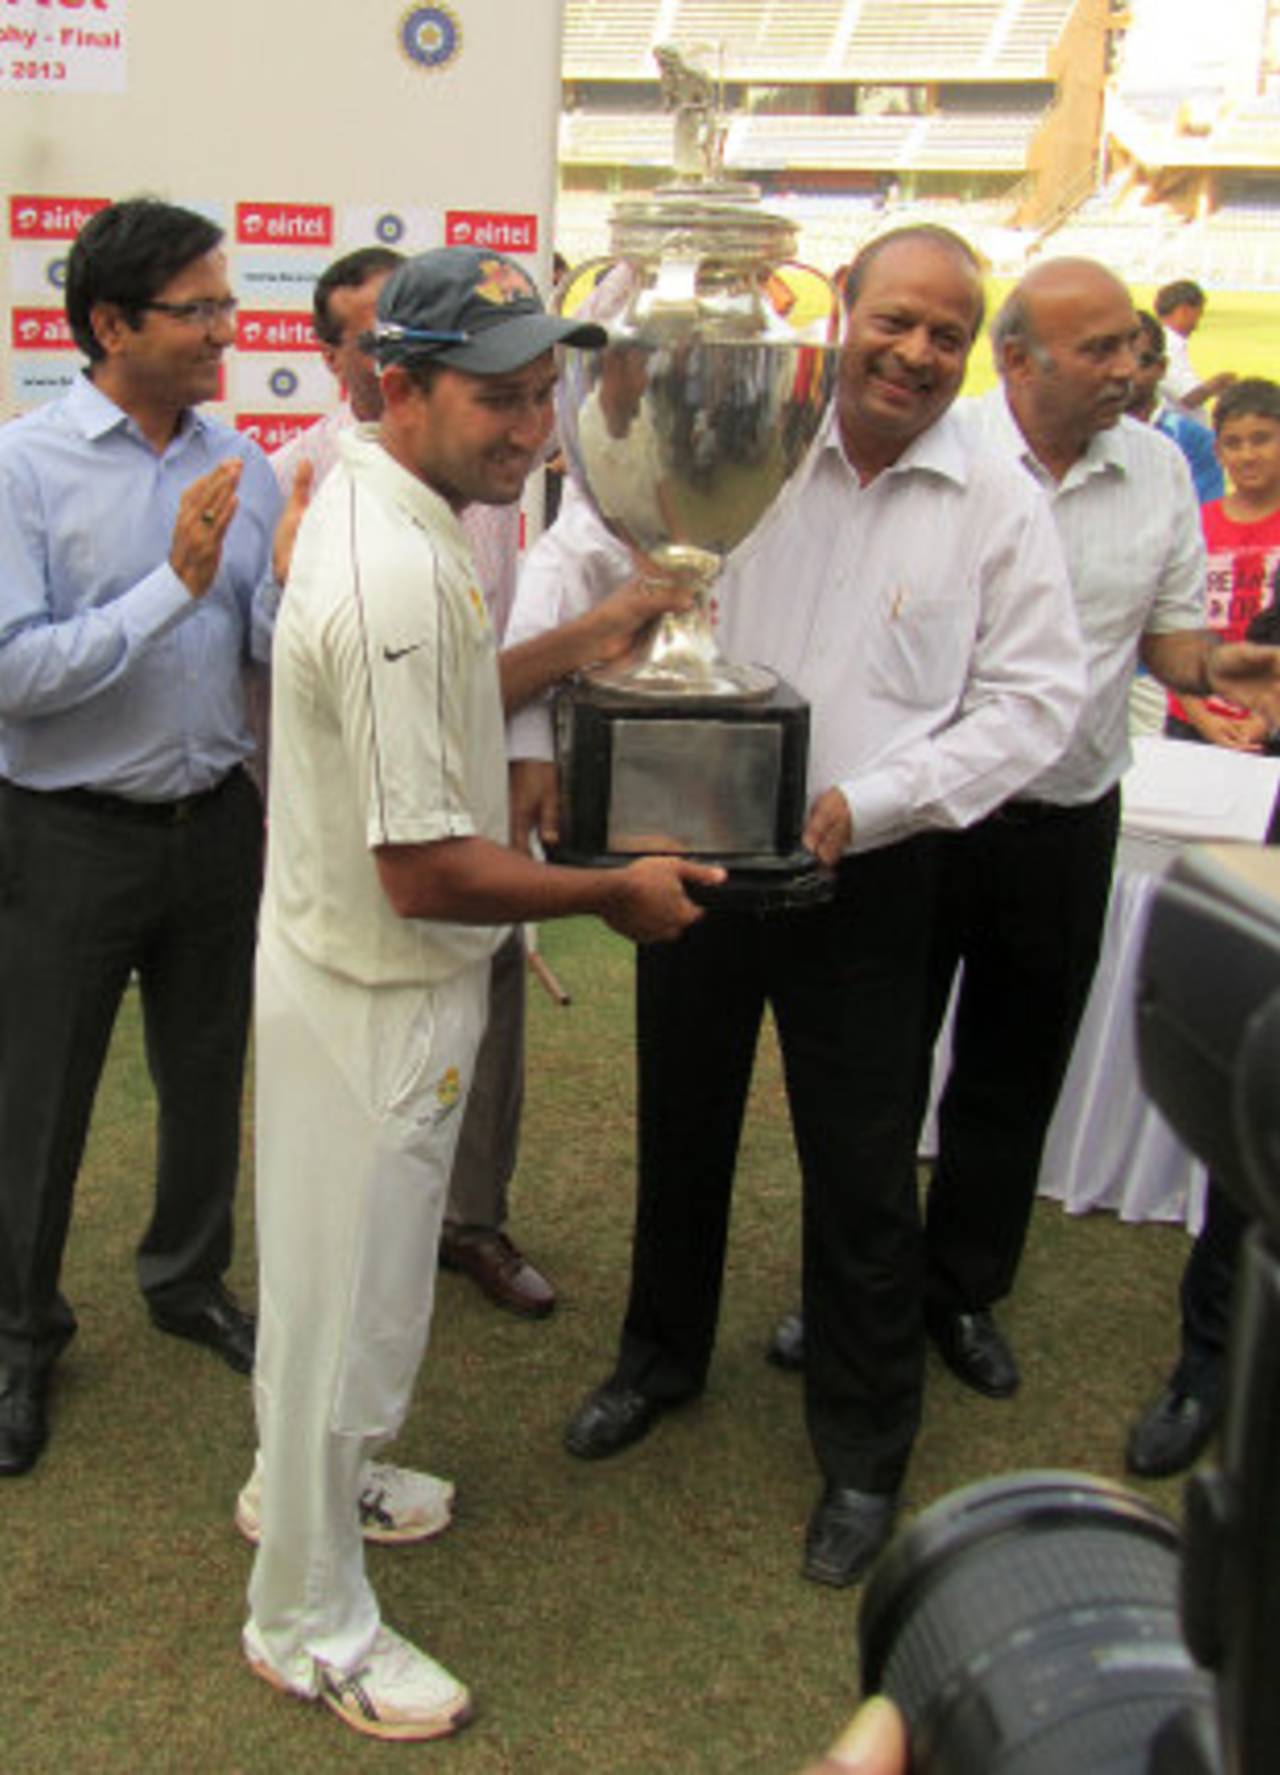 Ajit Agarkar captained Mumbai to what was their 40th Ranji Trophy title last season&nbsp;&nbsp;&bull;&nbsp;&nbsp;ESPNcricinfo Ltd